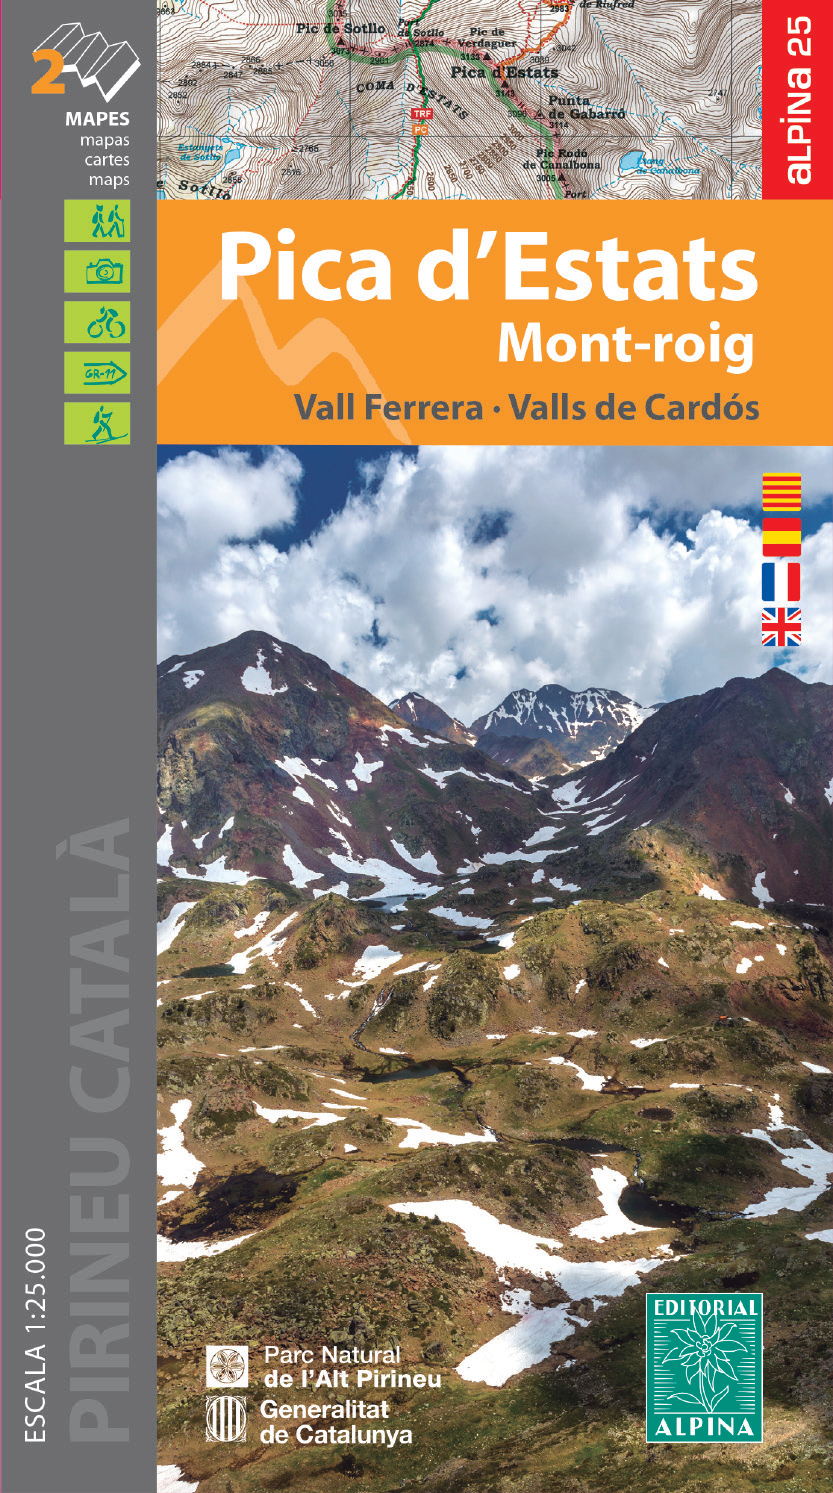 Editorial Alpina mapa Pica ď Estats, Mont-roig, Vall Ferrera, Vall de Cardós 1:2